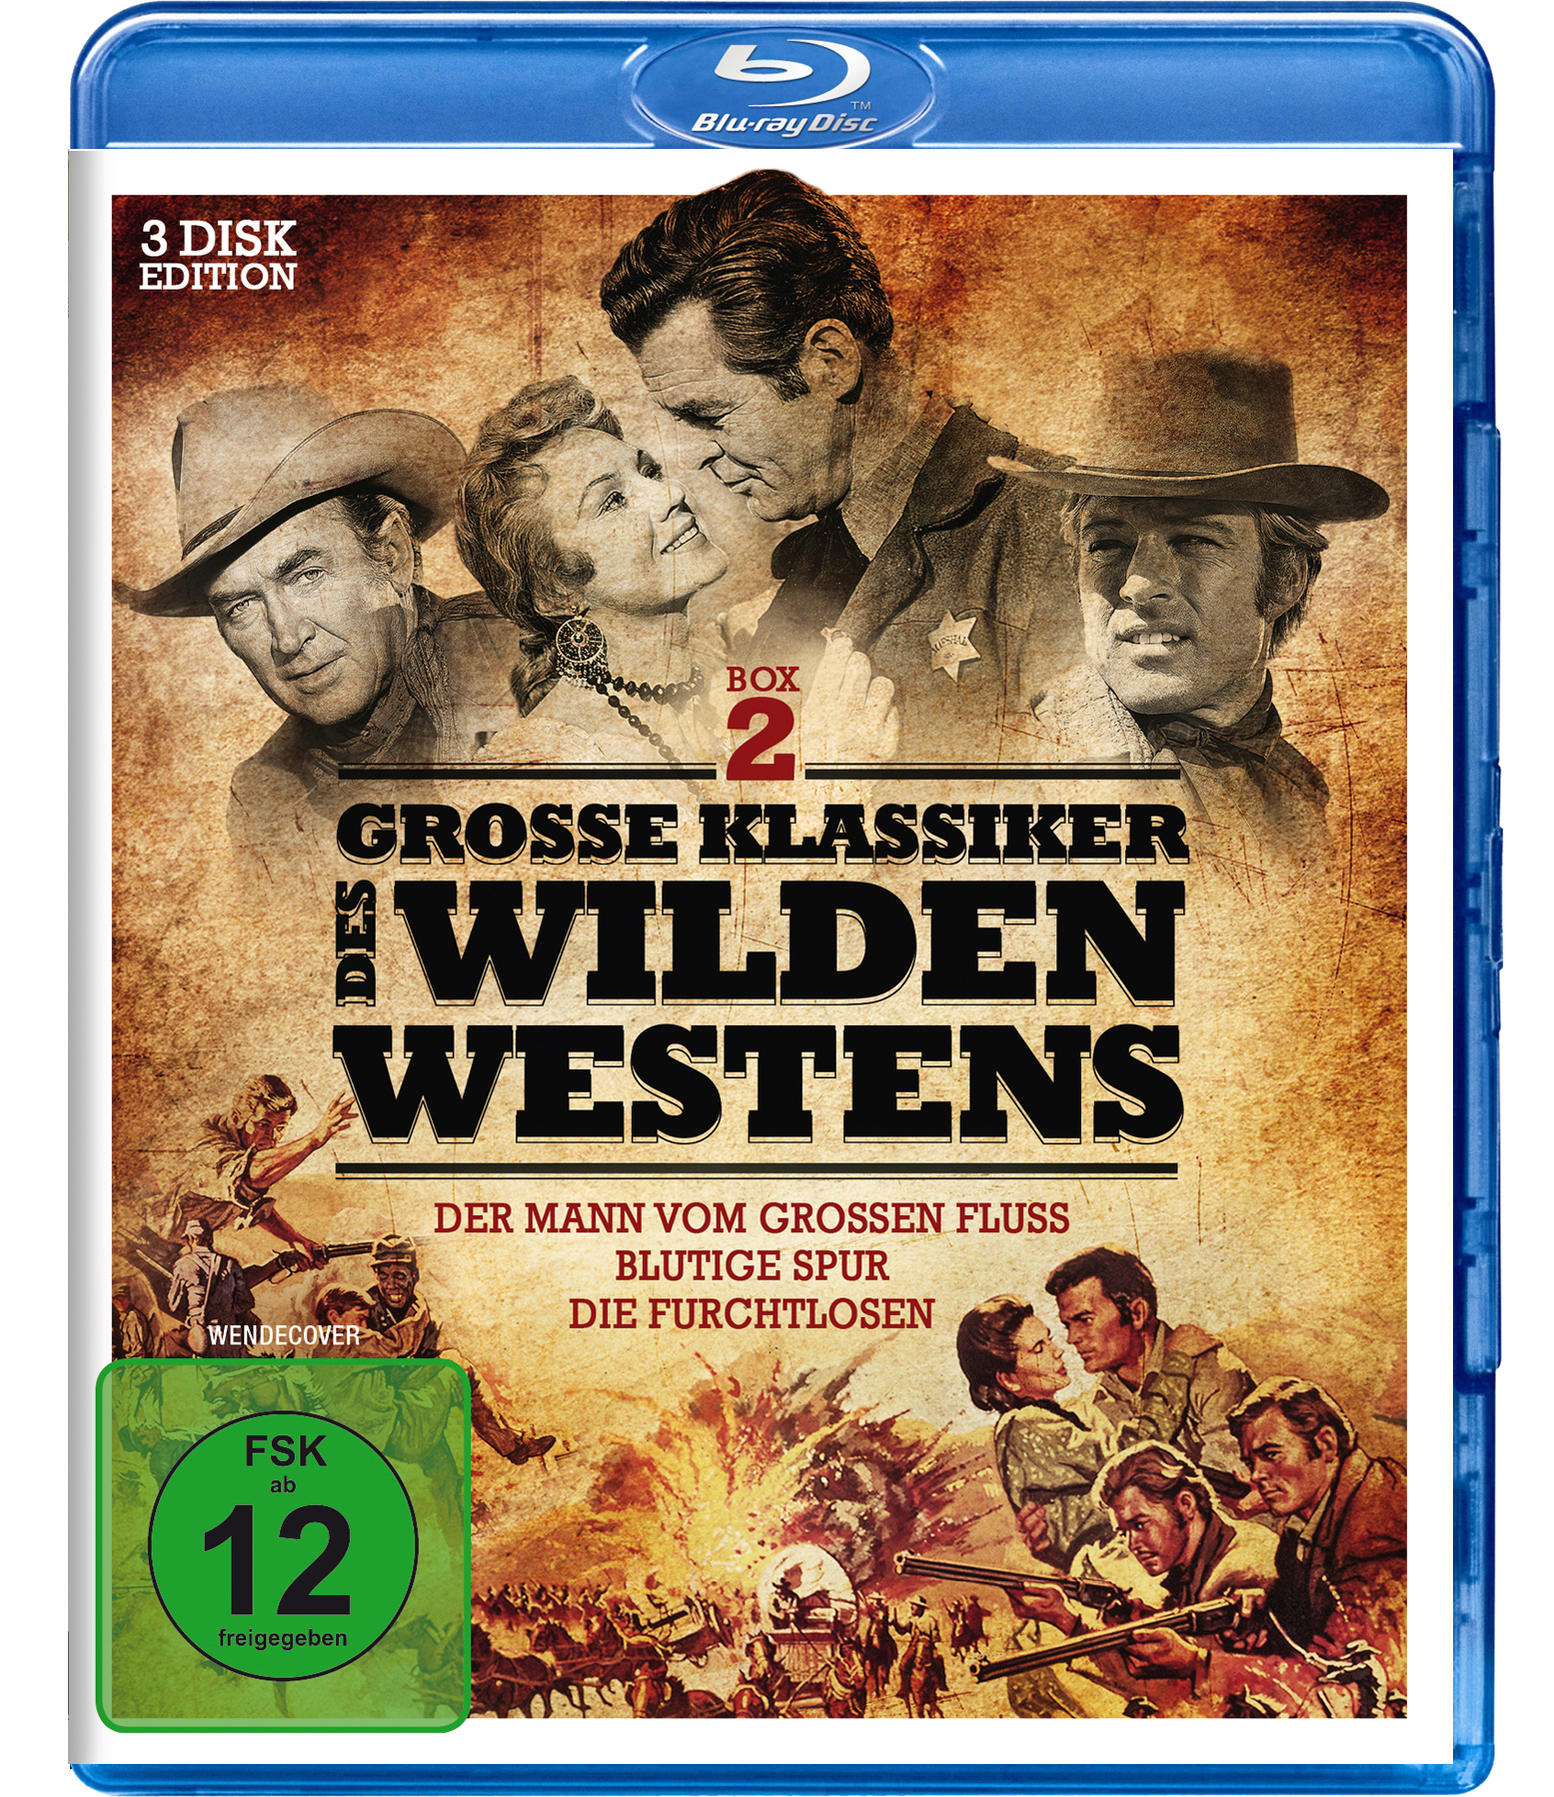 Klassiker Blu-ray Westens Große 2 des Wilden